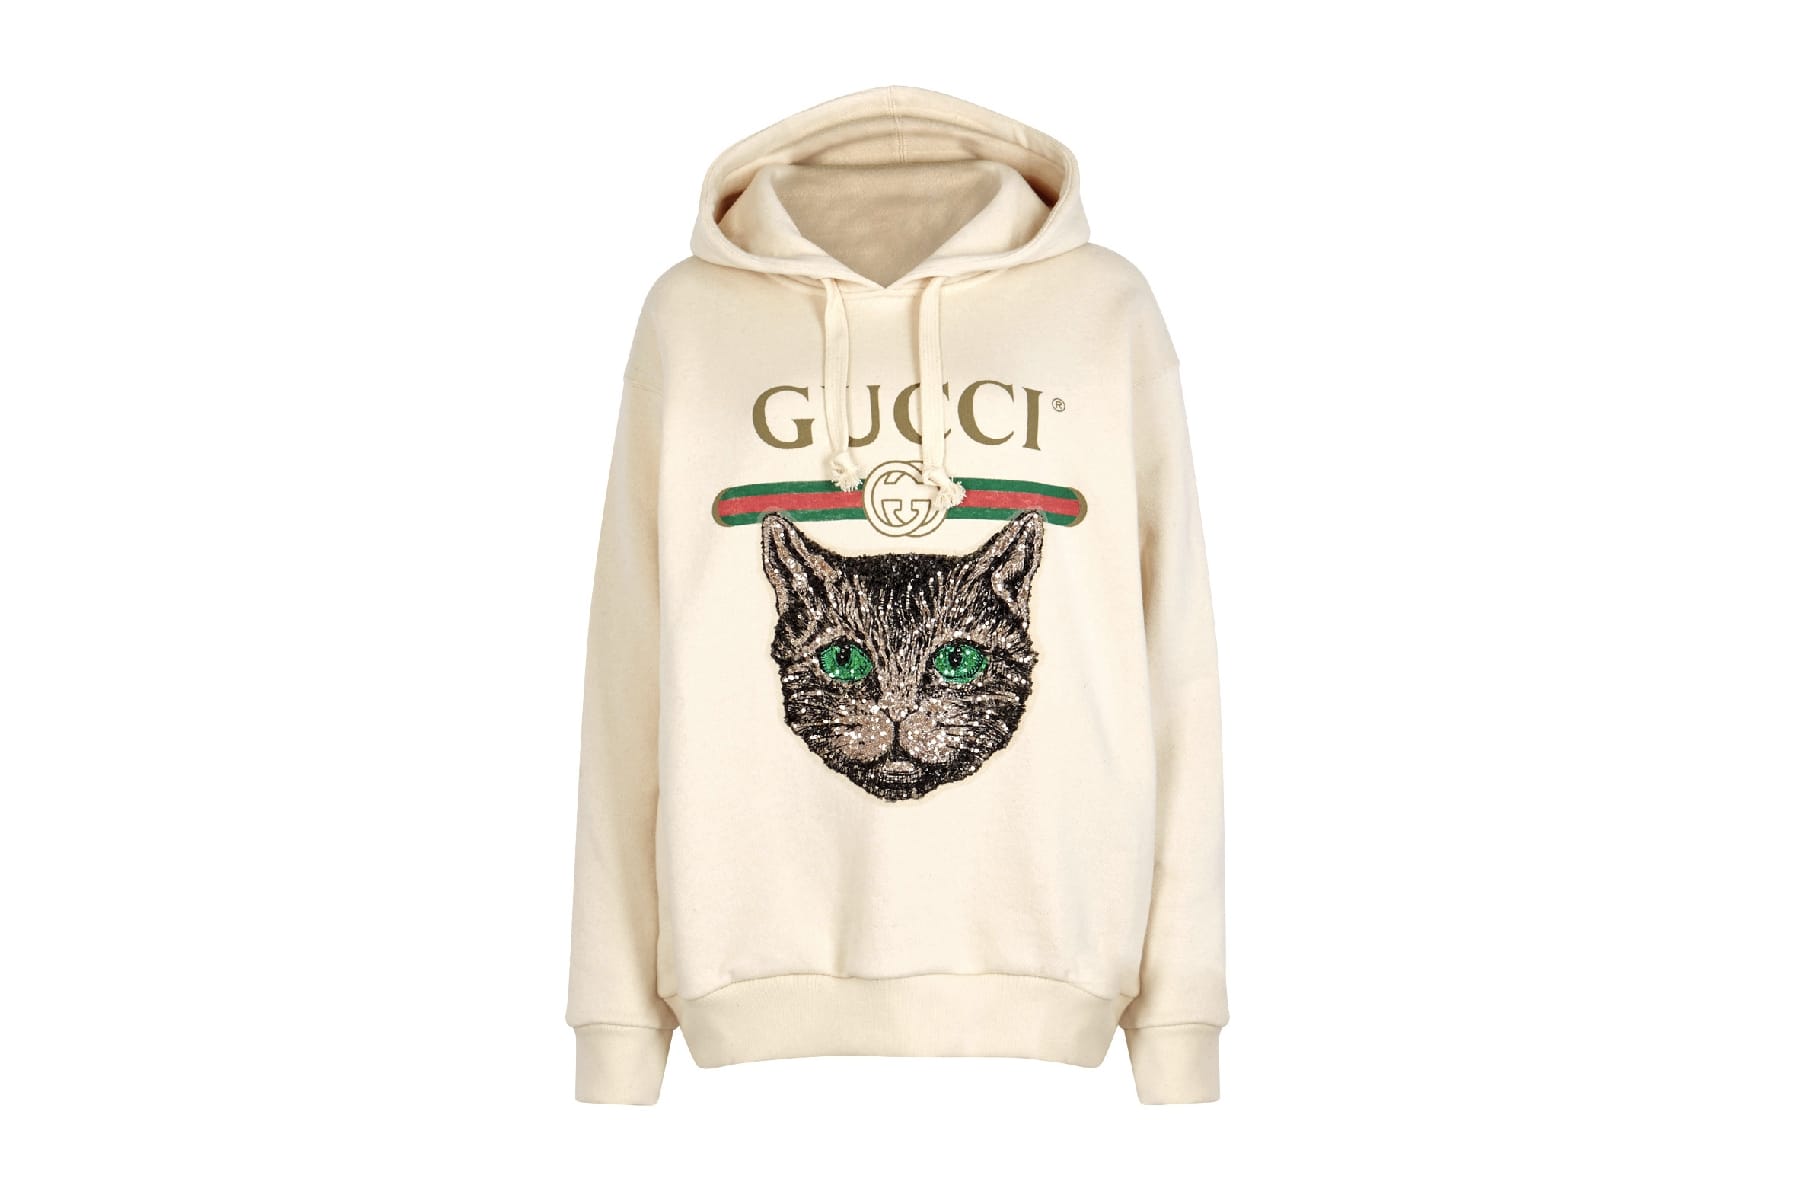 gucci sweater cat